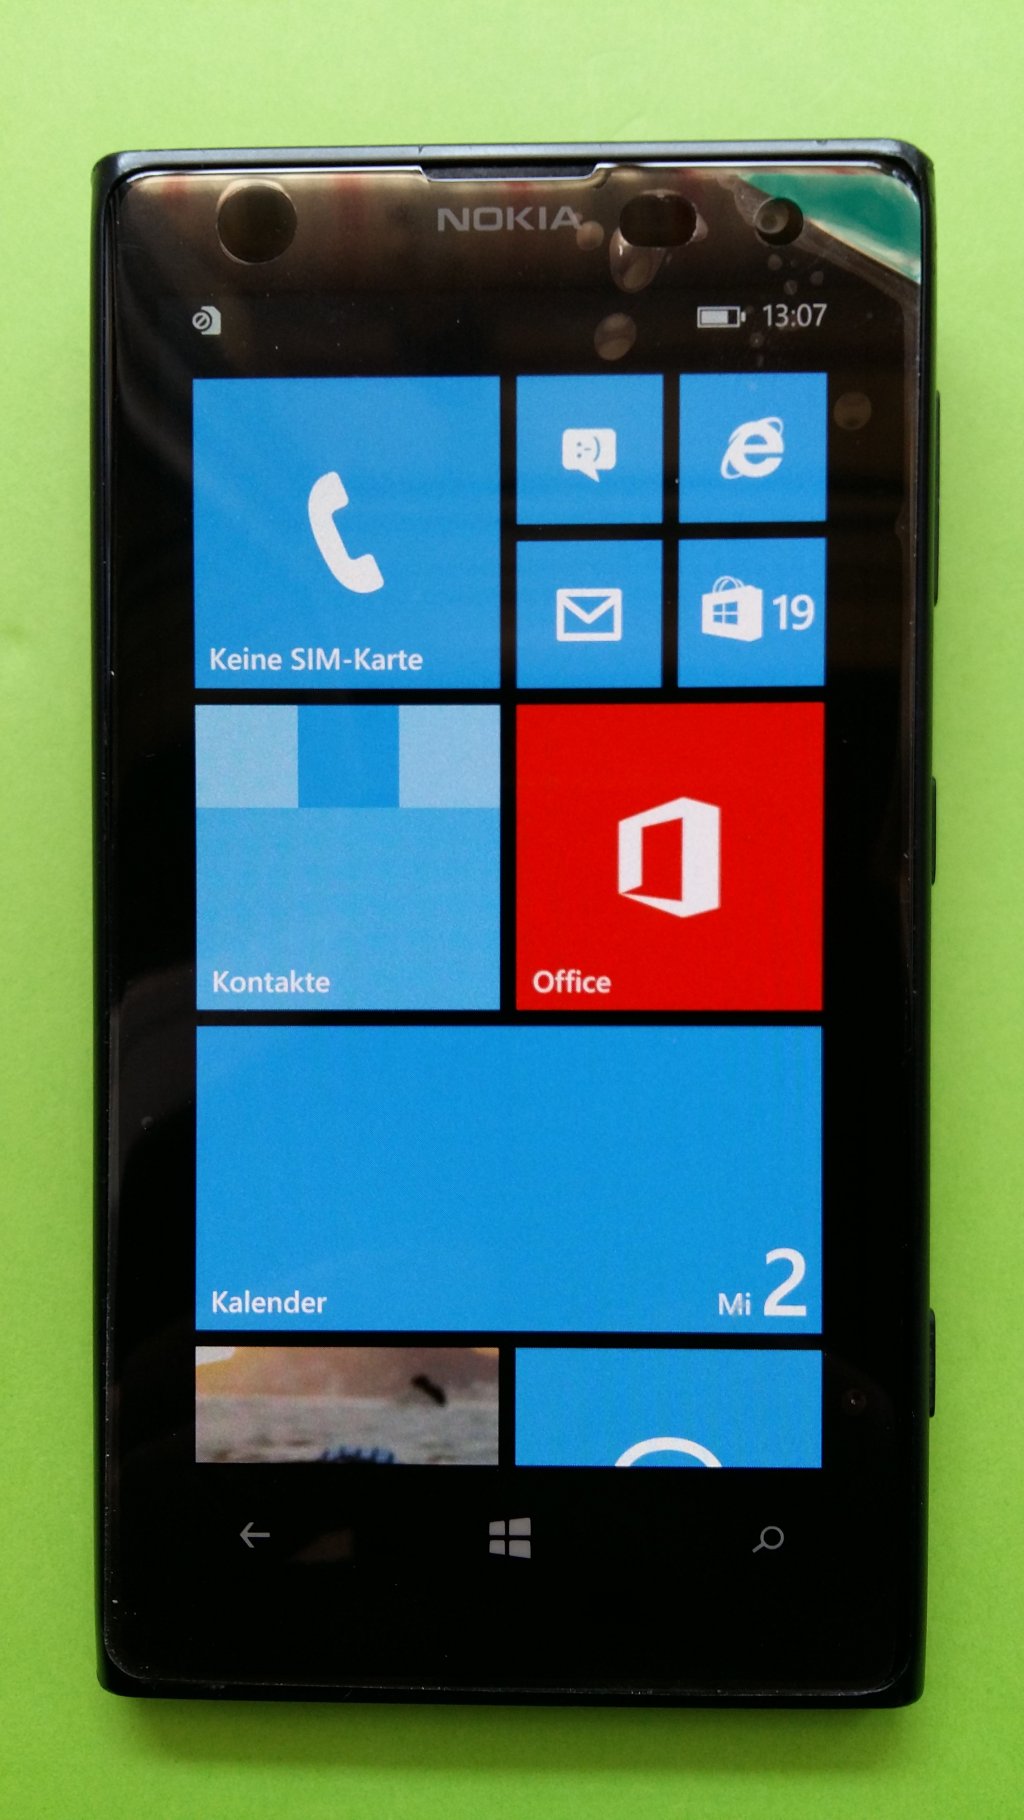 image-8259167-Nokia_1020_Lumia_(1)1.w640.jpg